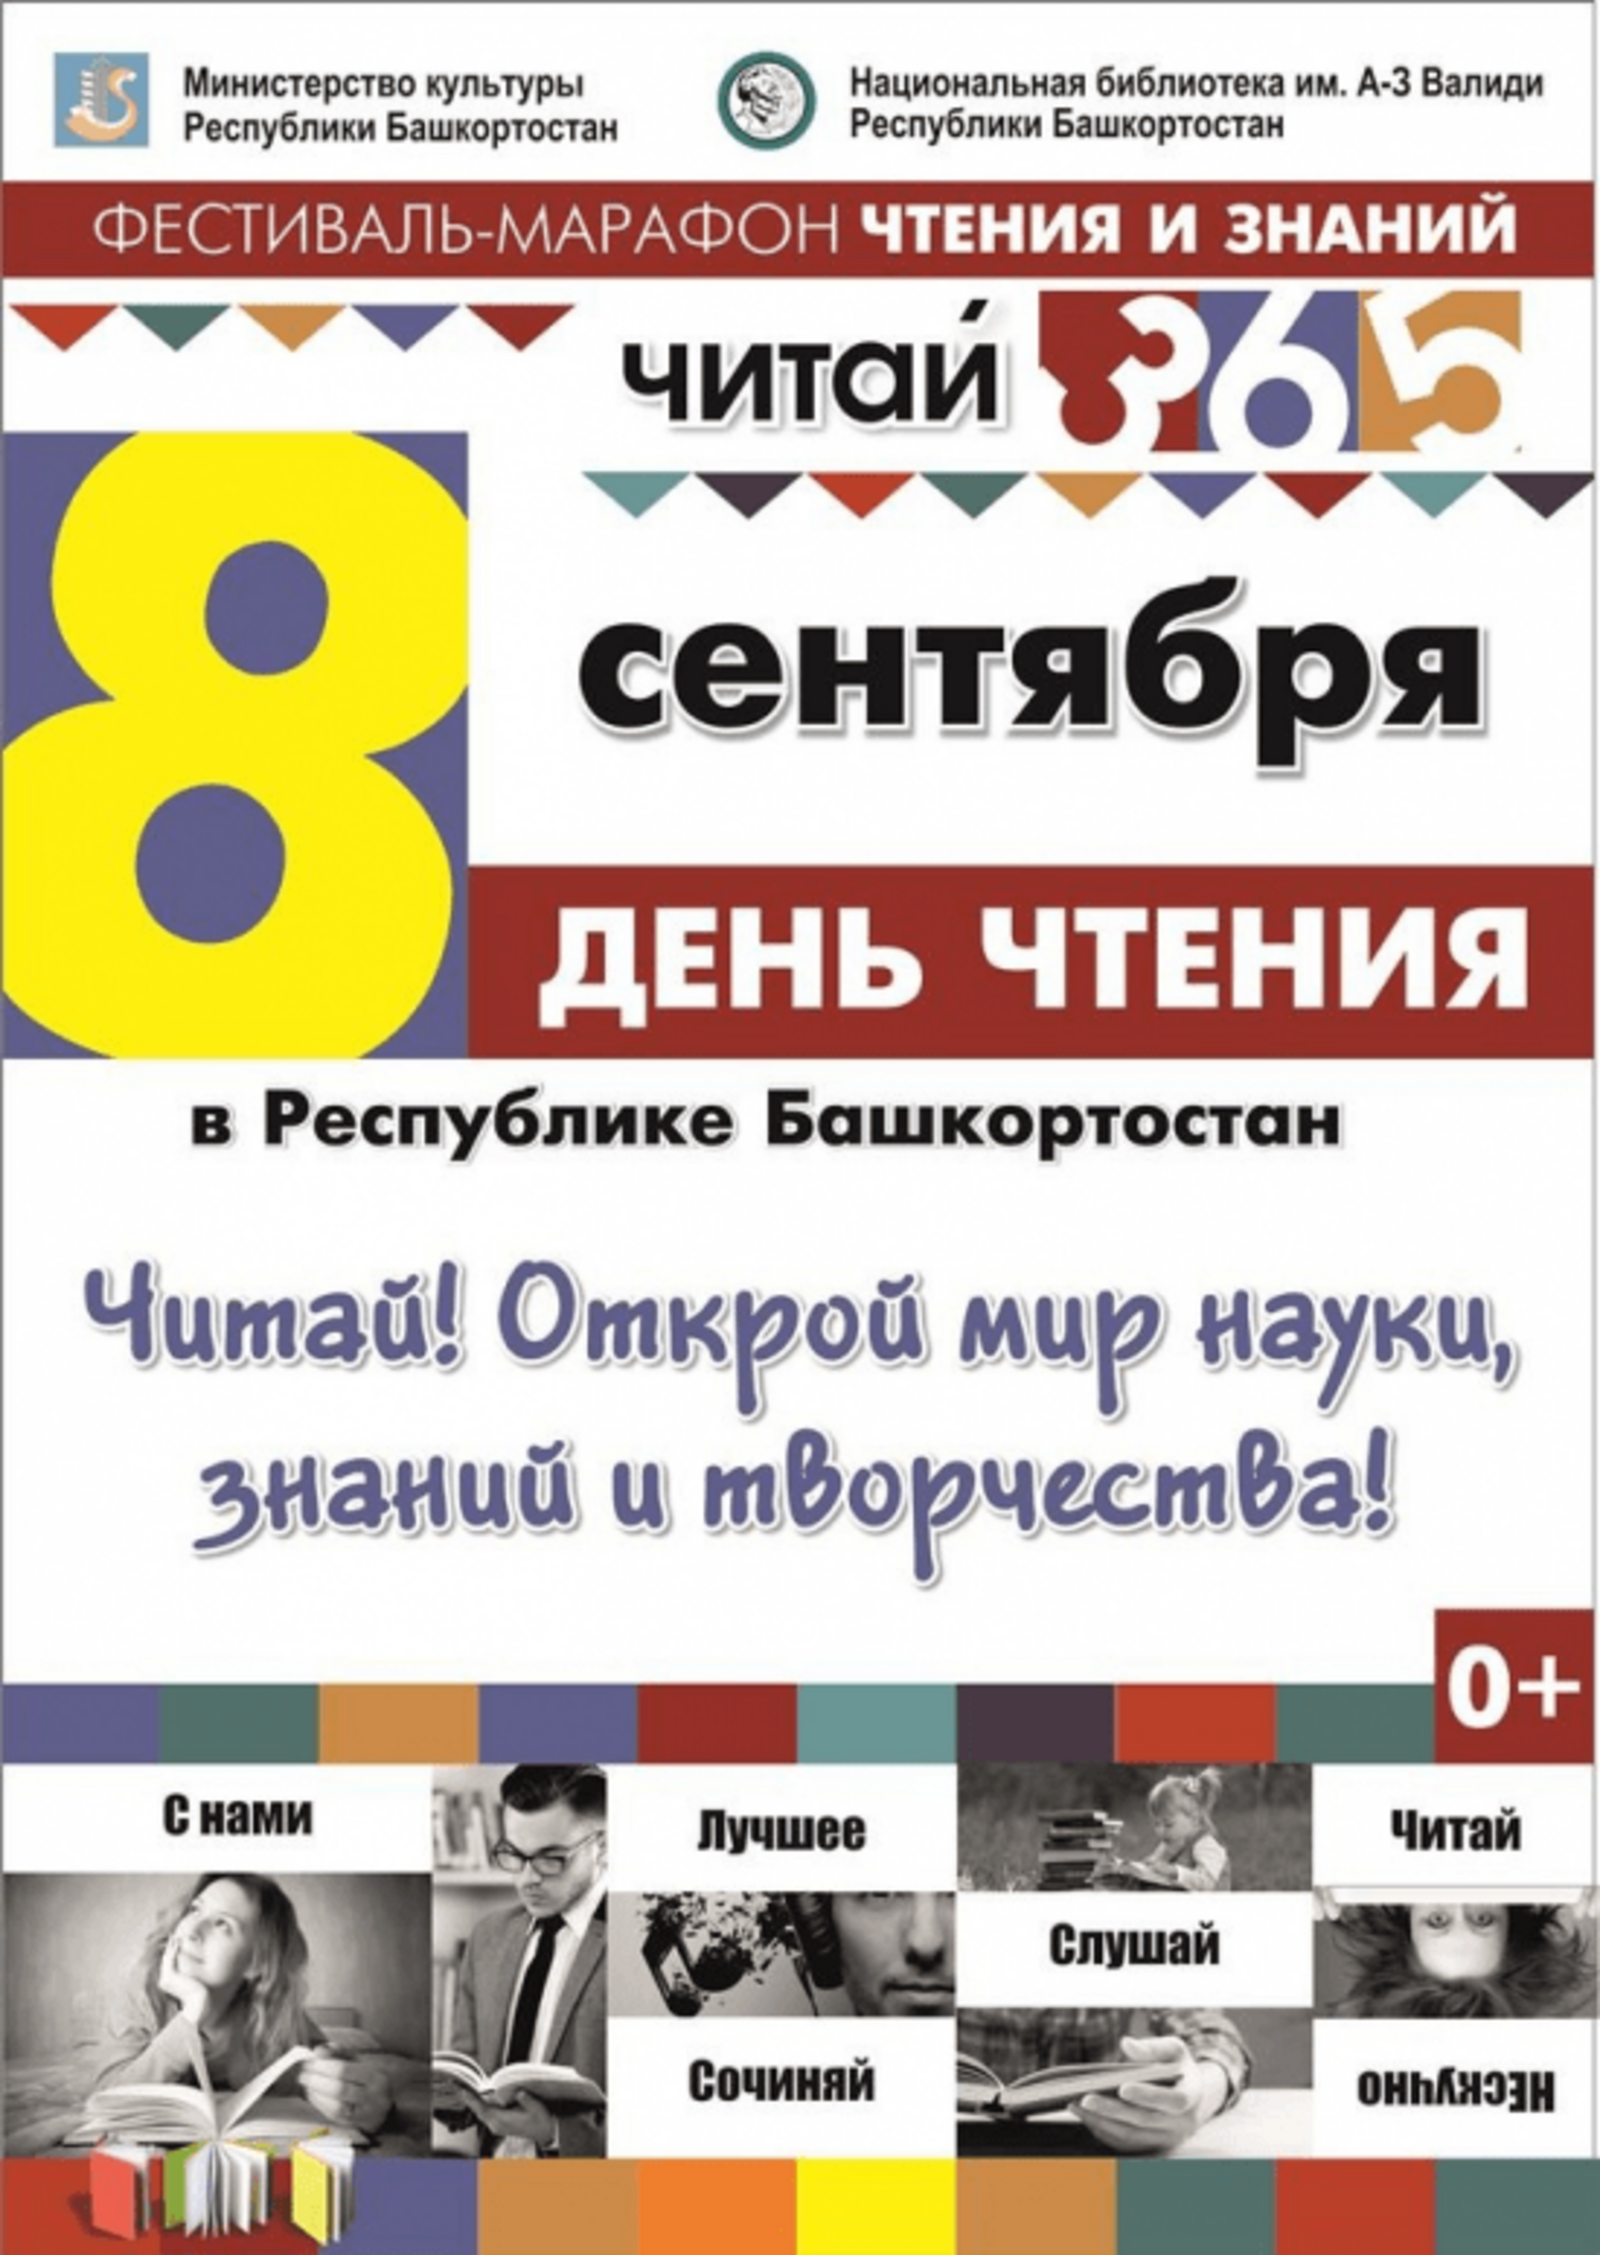 Сегодня в Башкортостане - Первый Республиканский День чтения